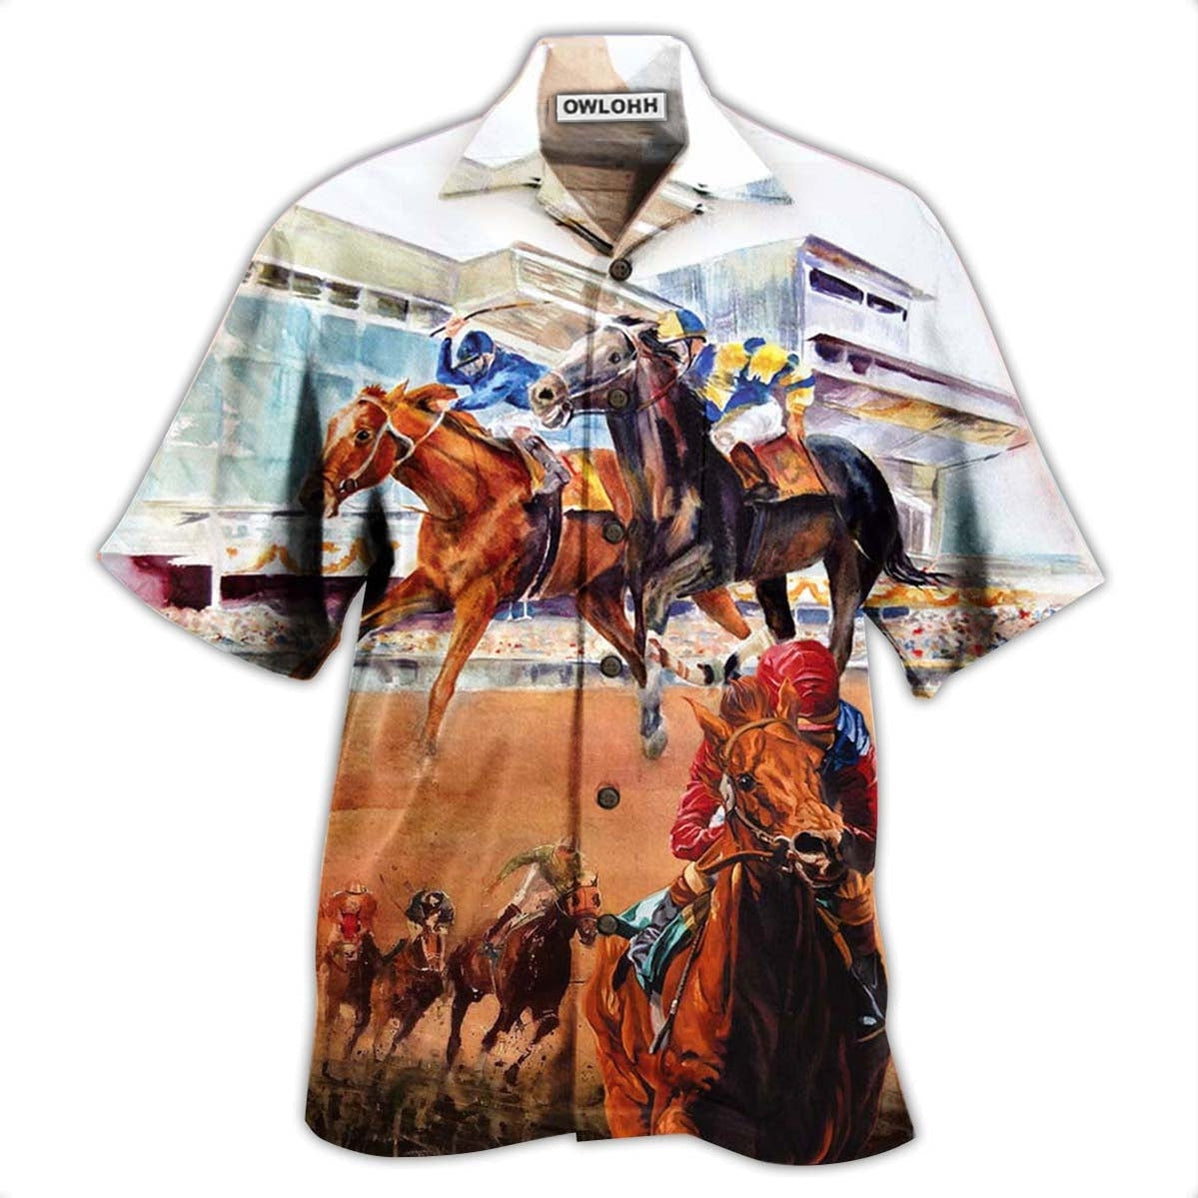 Hawaiian Shirt / Adults / S Horse Racing Amazing - Hawaiian Shirt - Owls Matrix LTD